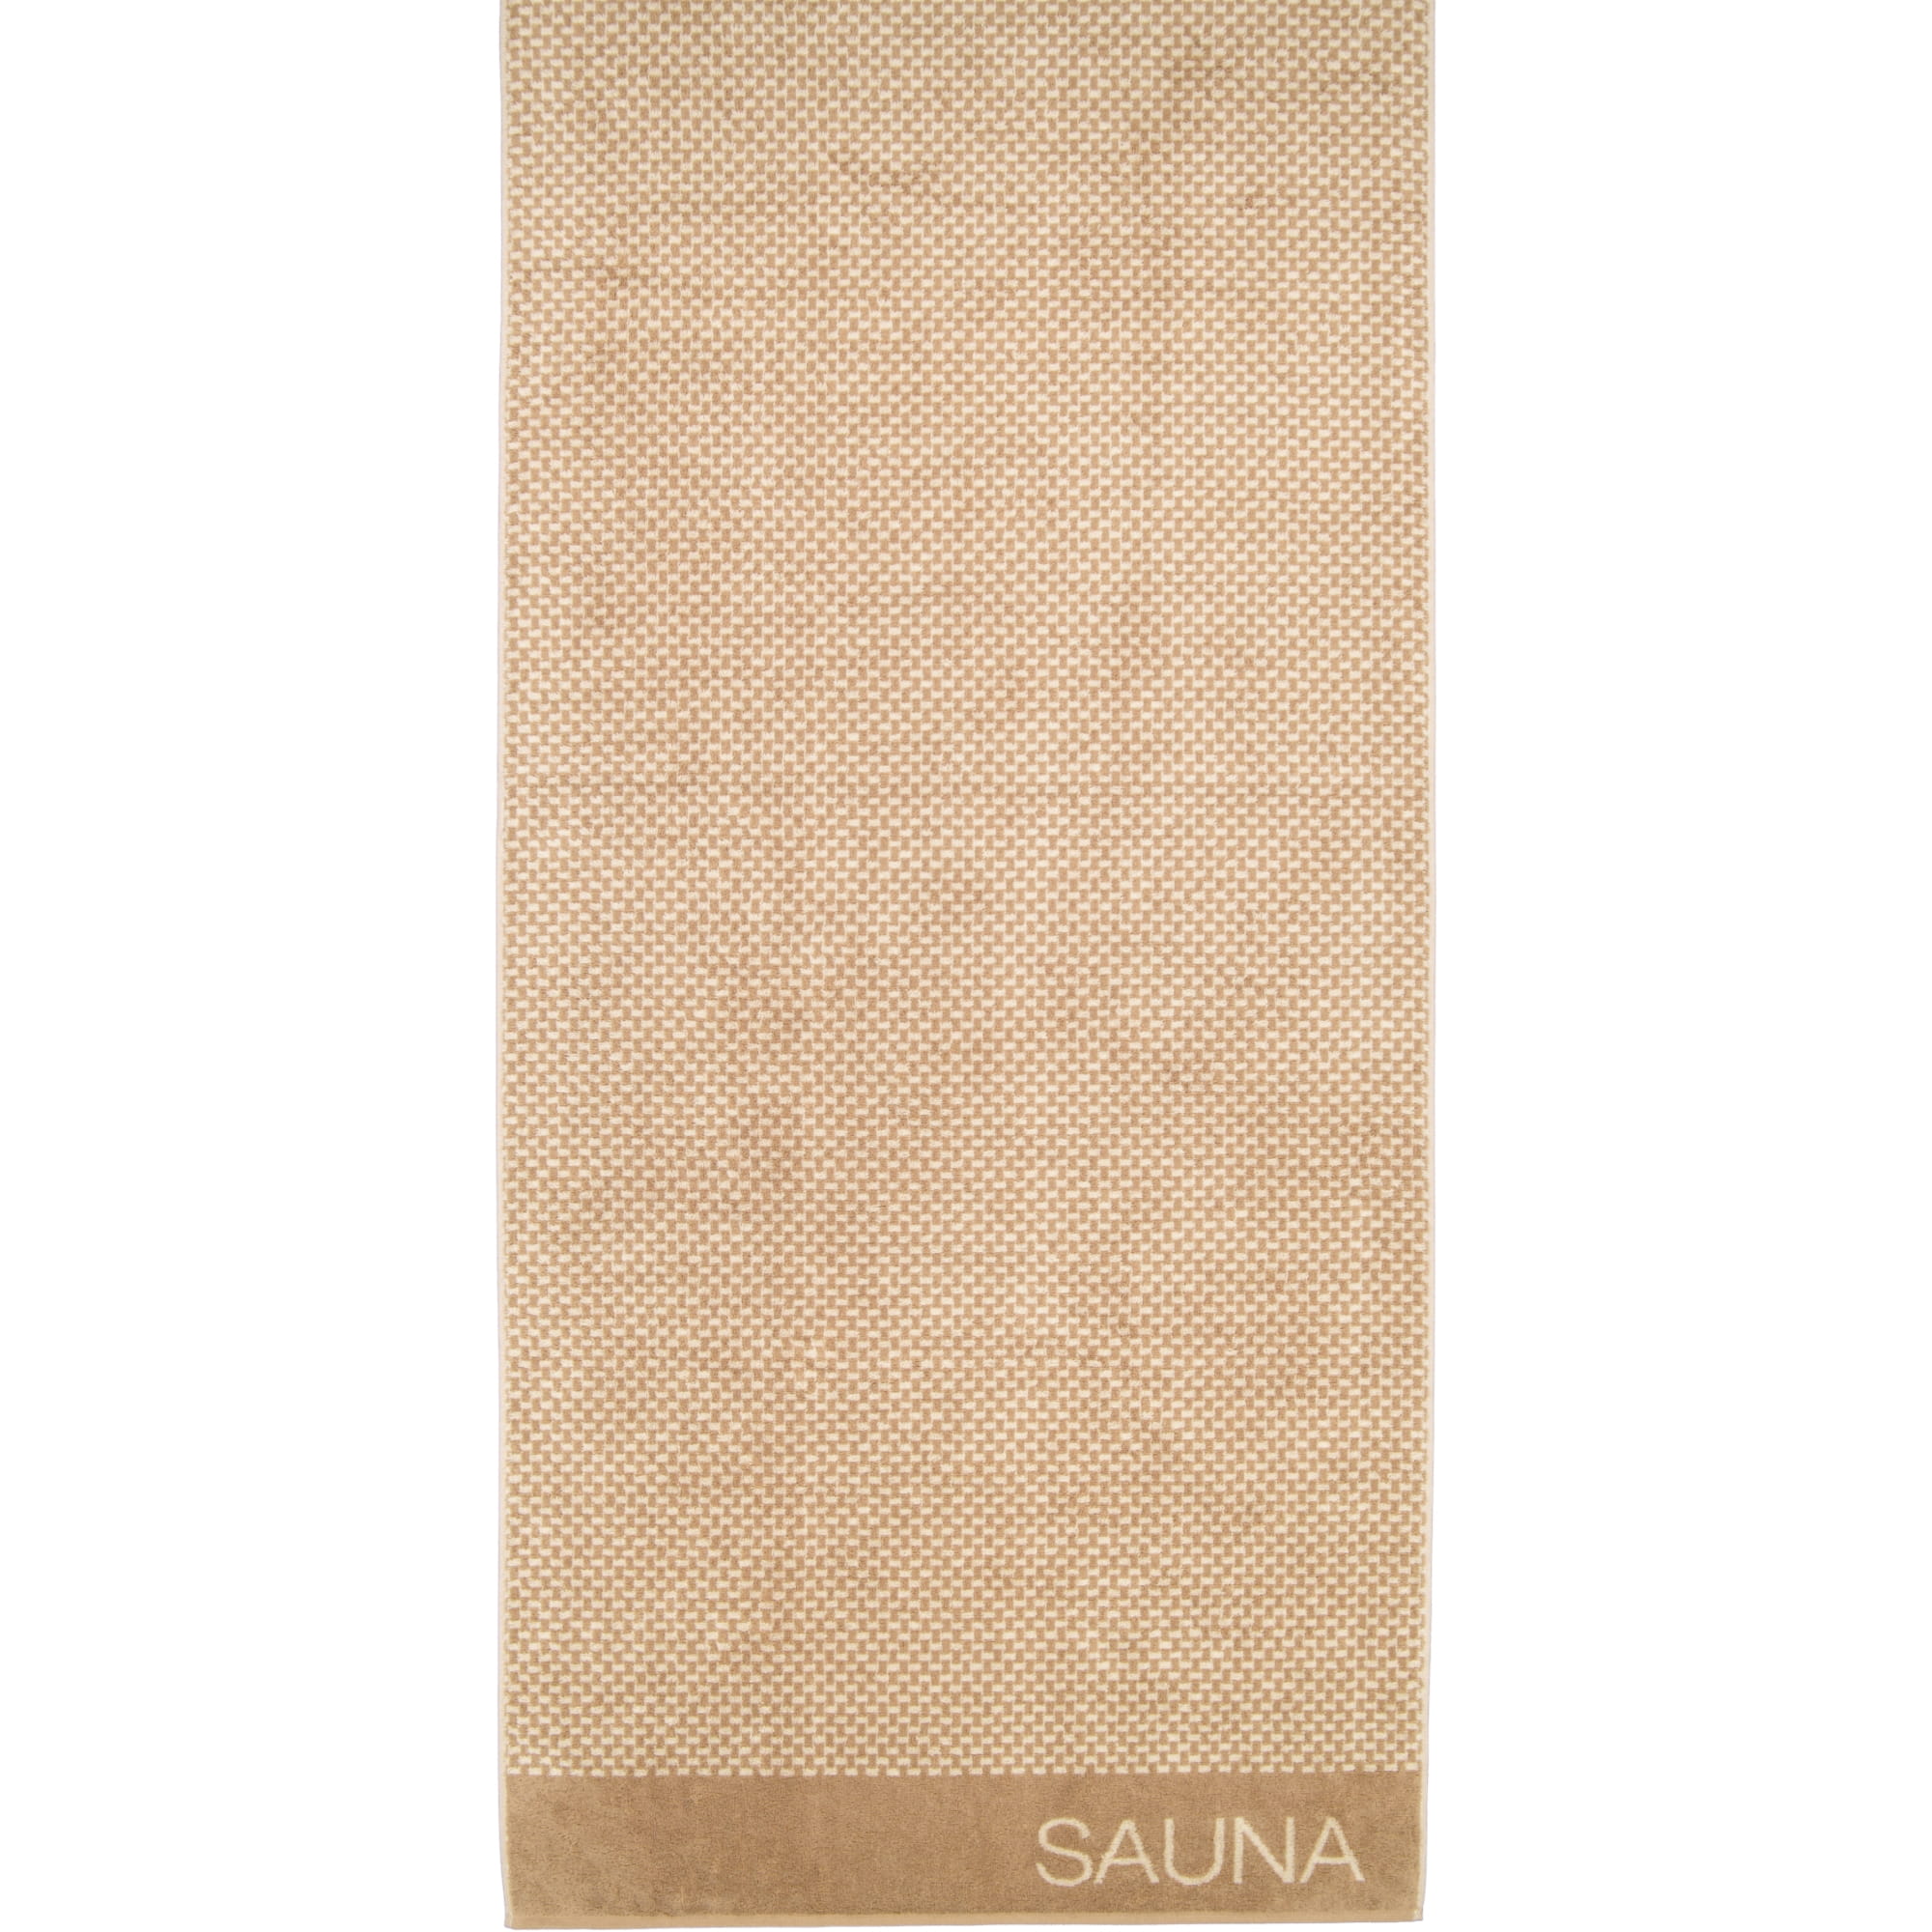 Cawö Saunatuch Natural Allover 6220 80x200 cm - Farbe: natur-caramel - 33 |  Alle Artikel | Handtücher | Cawö